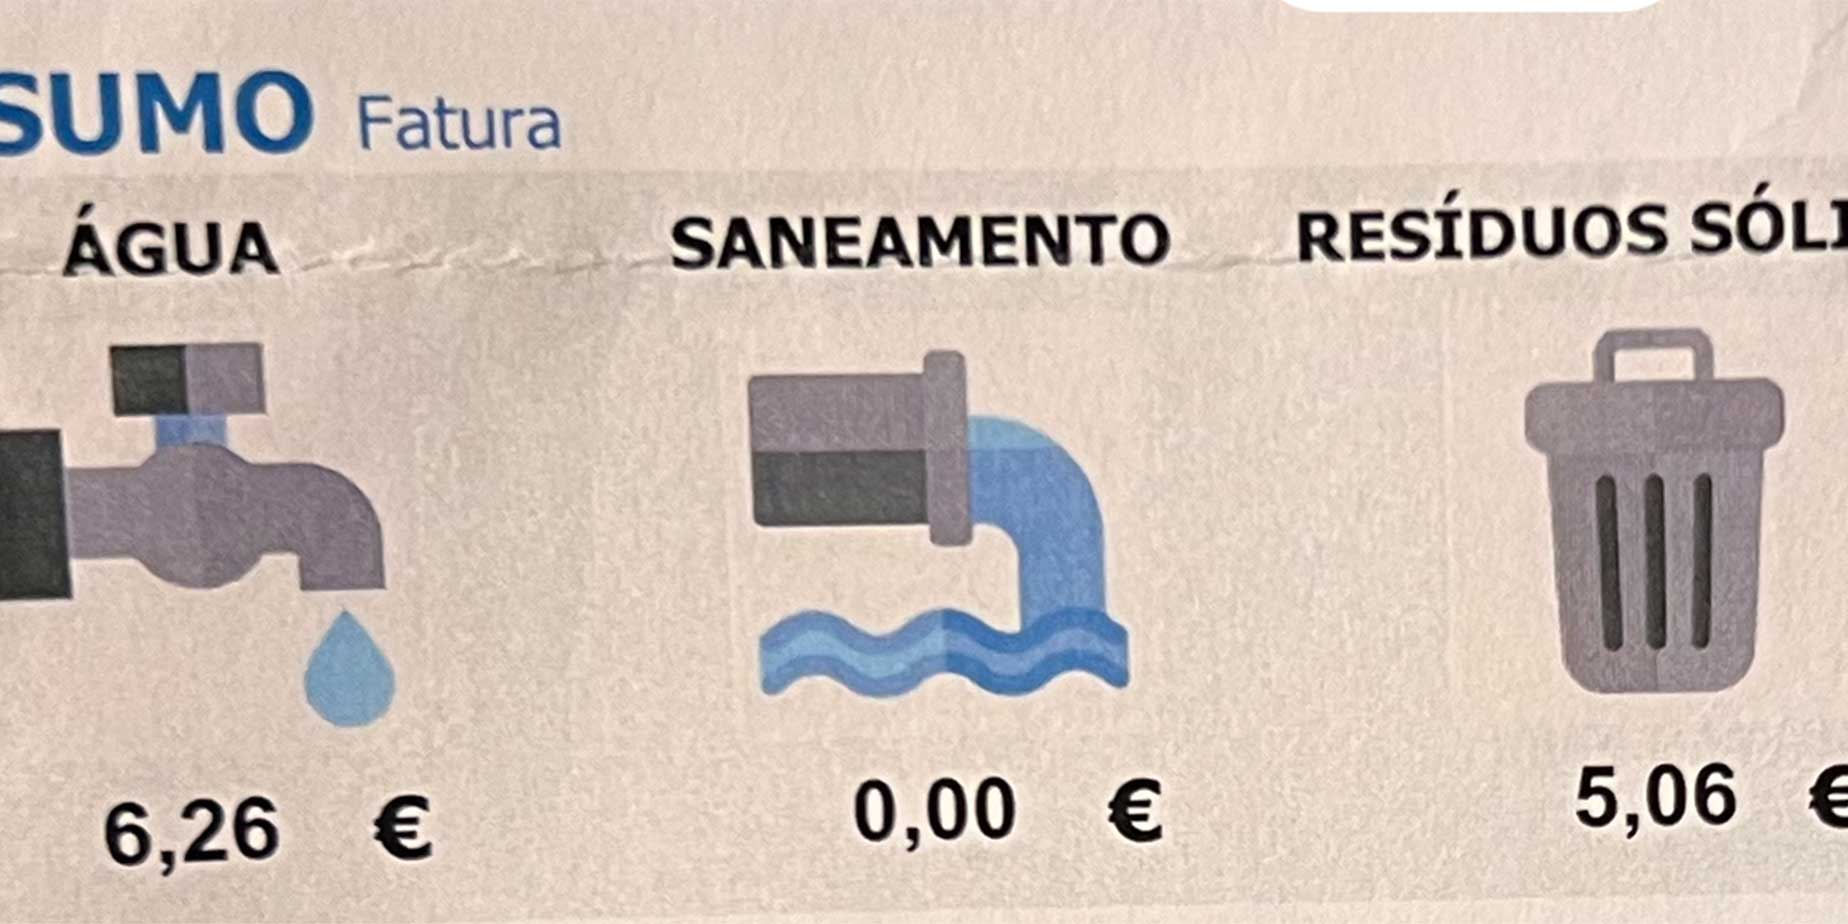 Vad kostar vatten i Portugal?